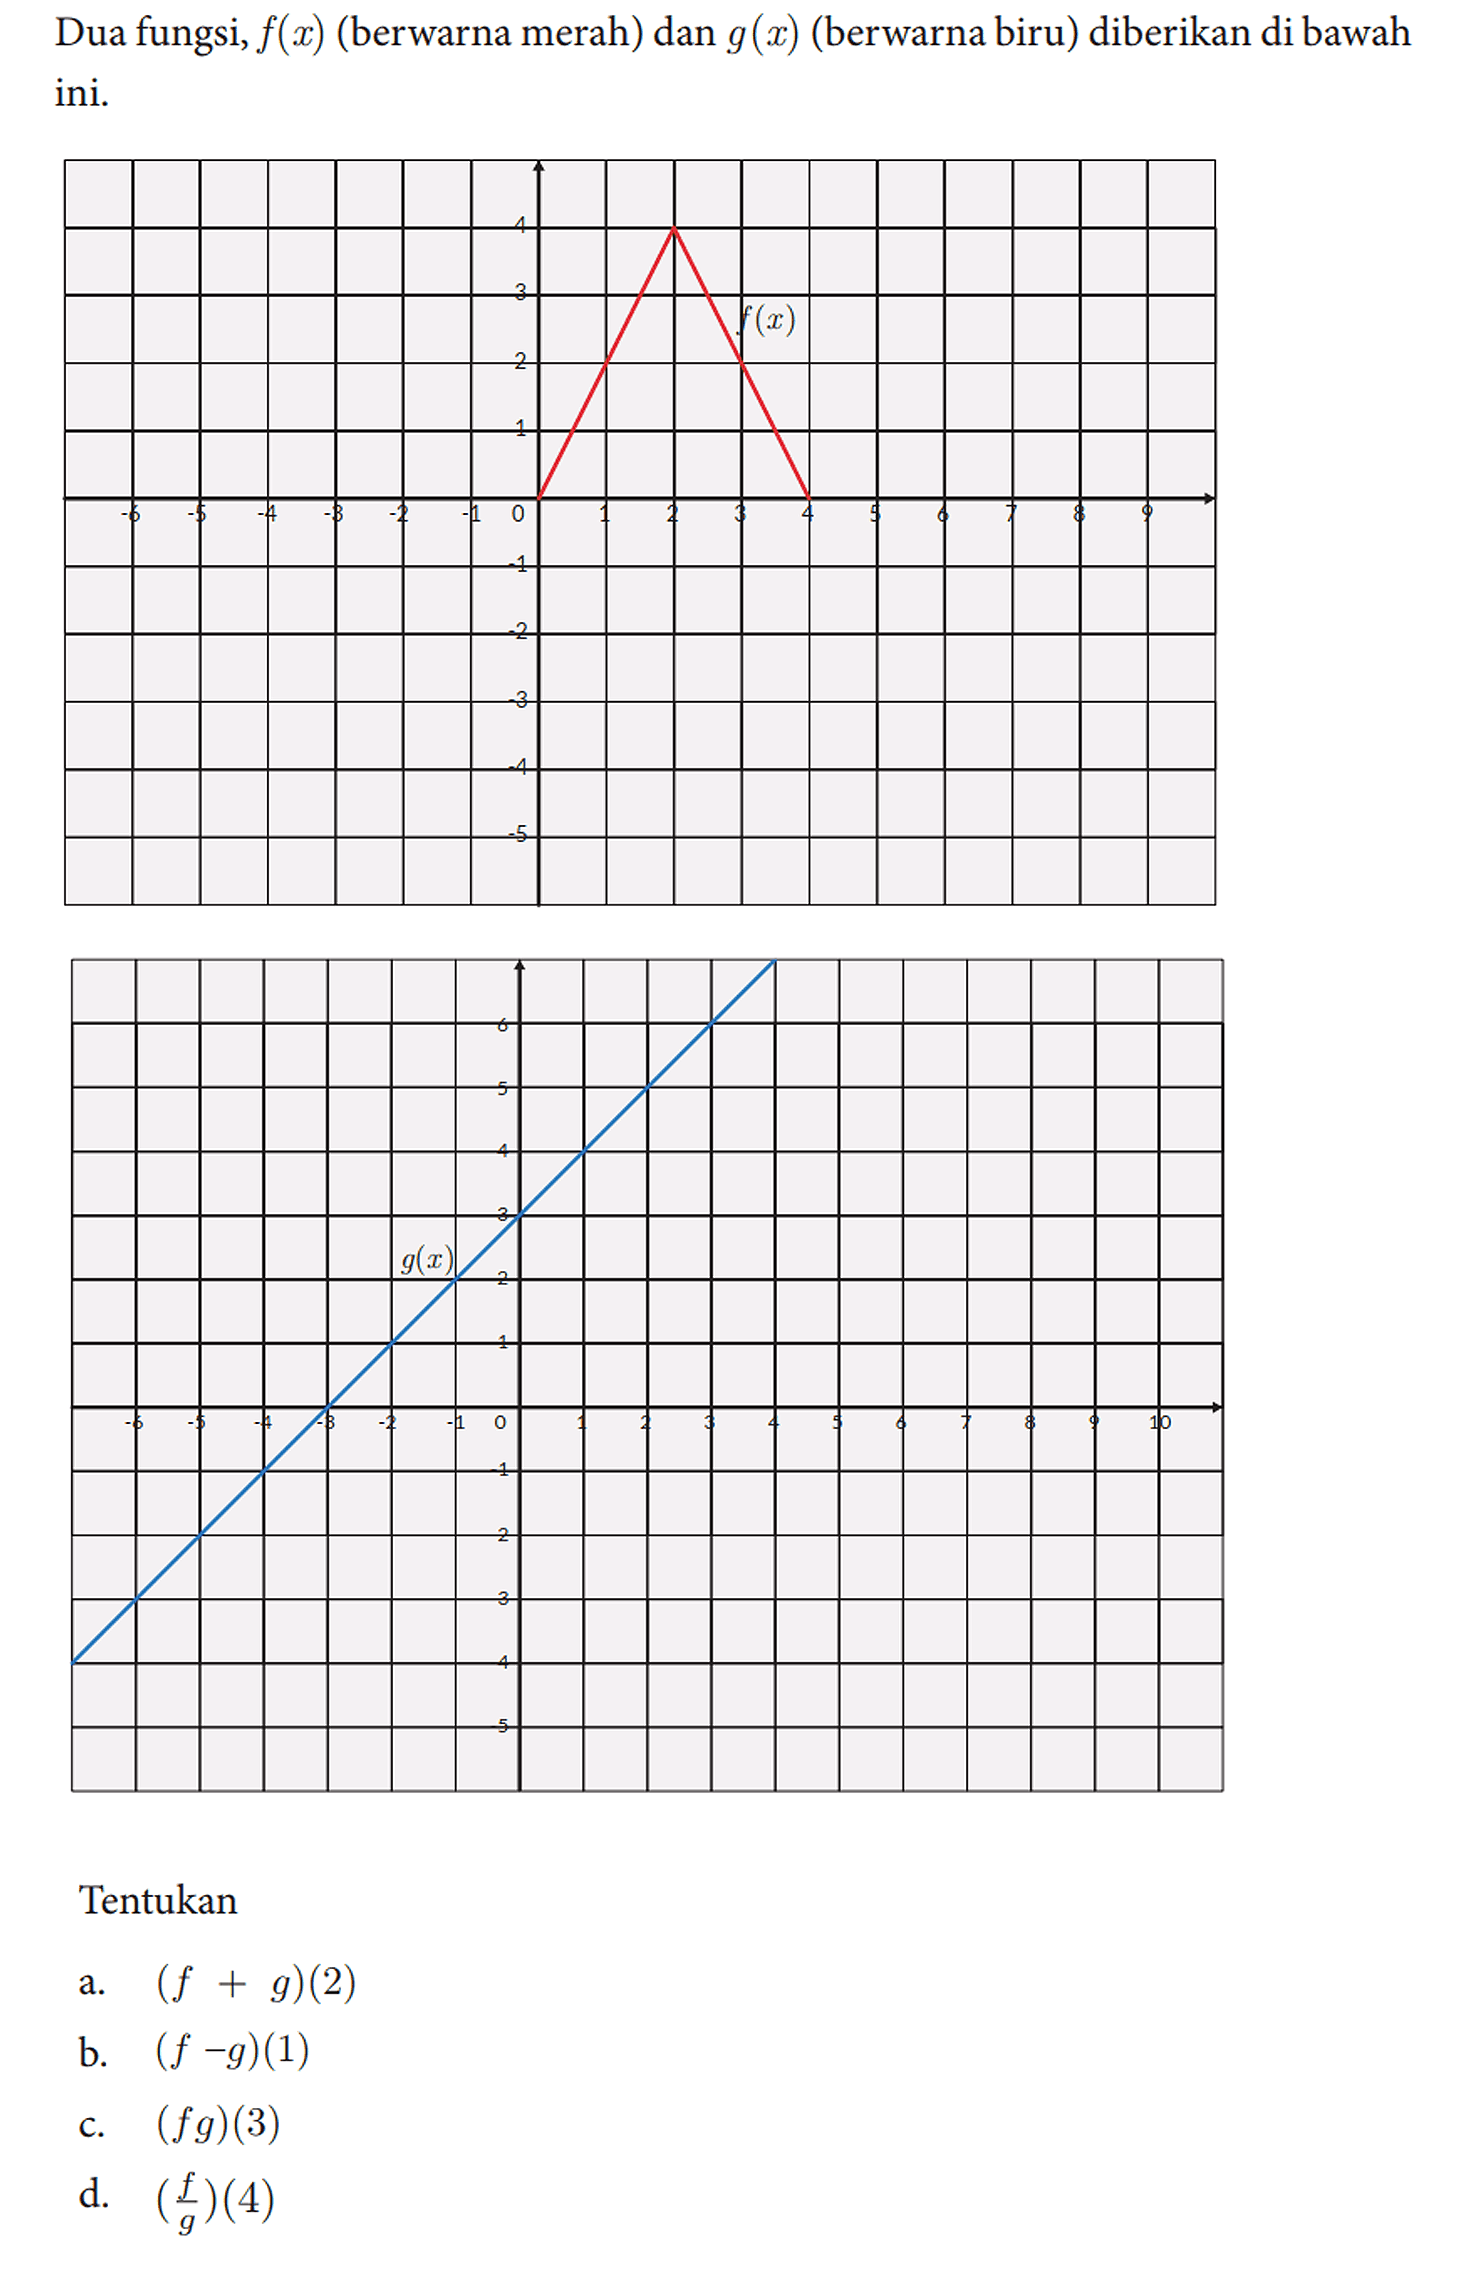 Dua fungsi, f(x) (berwarna merah) dan g(x) (berwarna biru) diberikan di bawah ini.
 Tentukan
 a. (f+g)(2) 
 b. (f-g)(1) 
 c. (f g)(3) 
 d. ((f)/(g))(4)